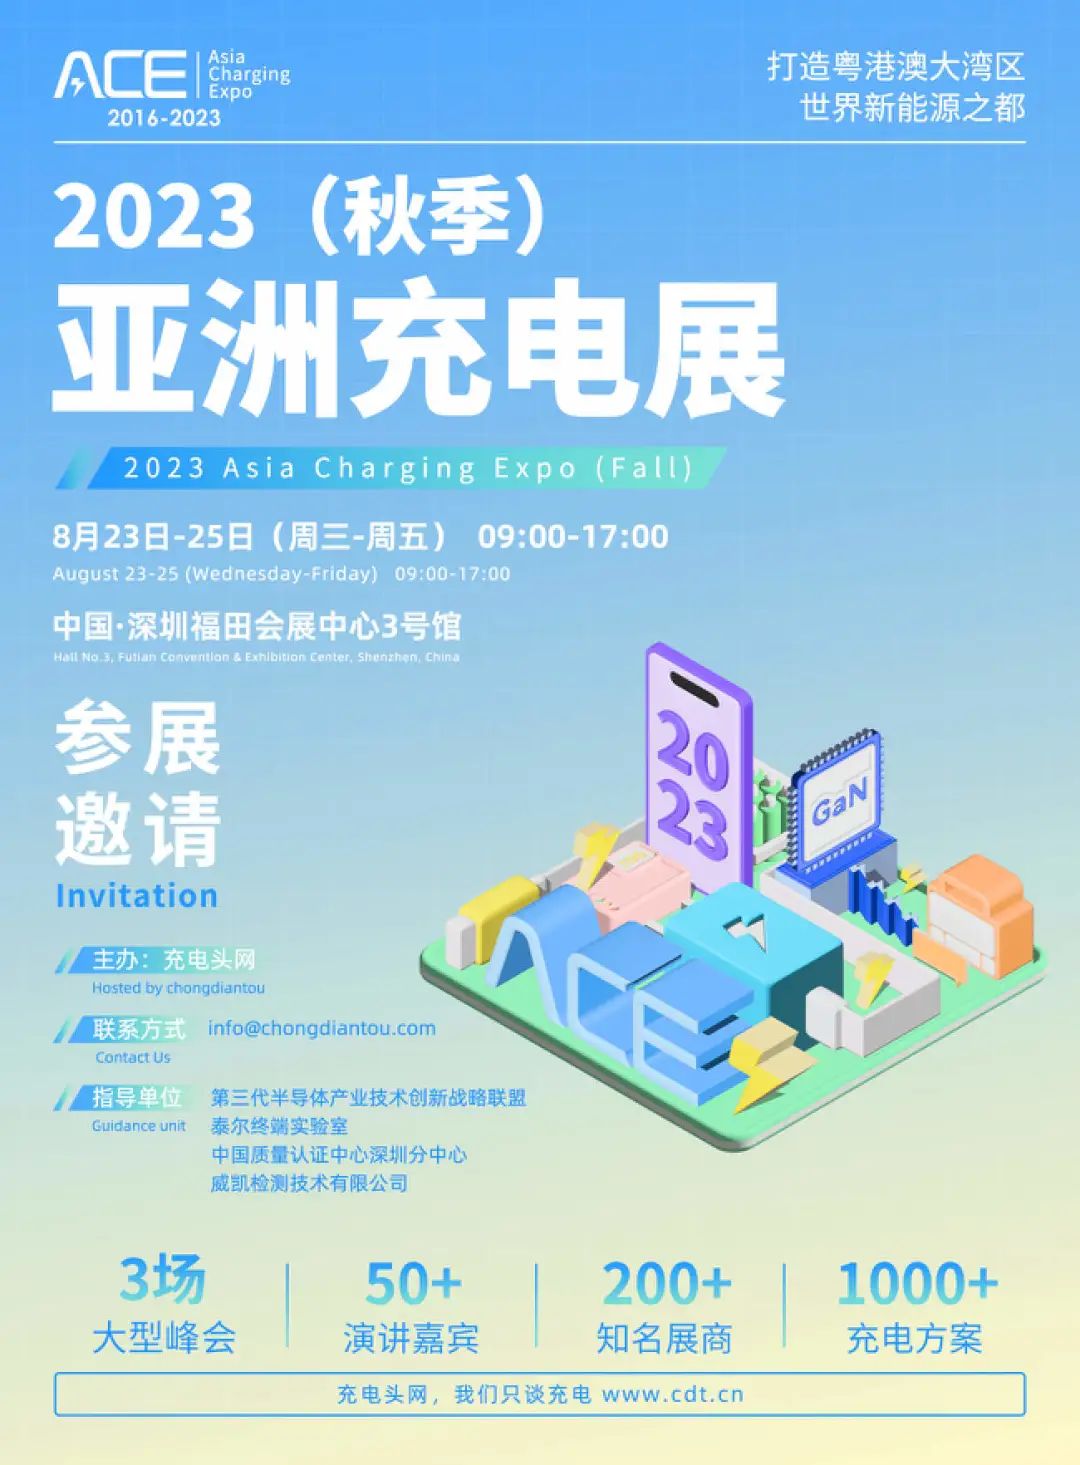 掘金Qi2无线充更新换代，8月24日来这场行业大会，众多大咖、展商分享-亚洲充电展